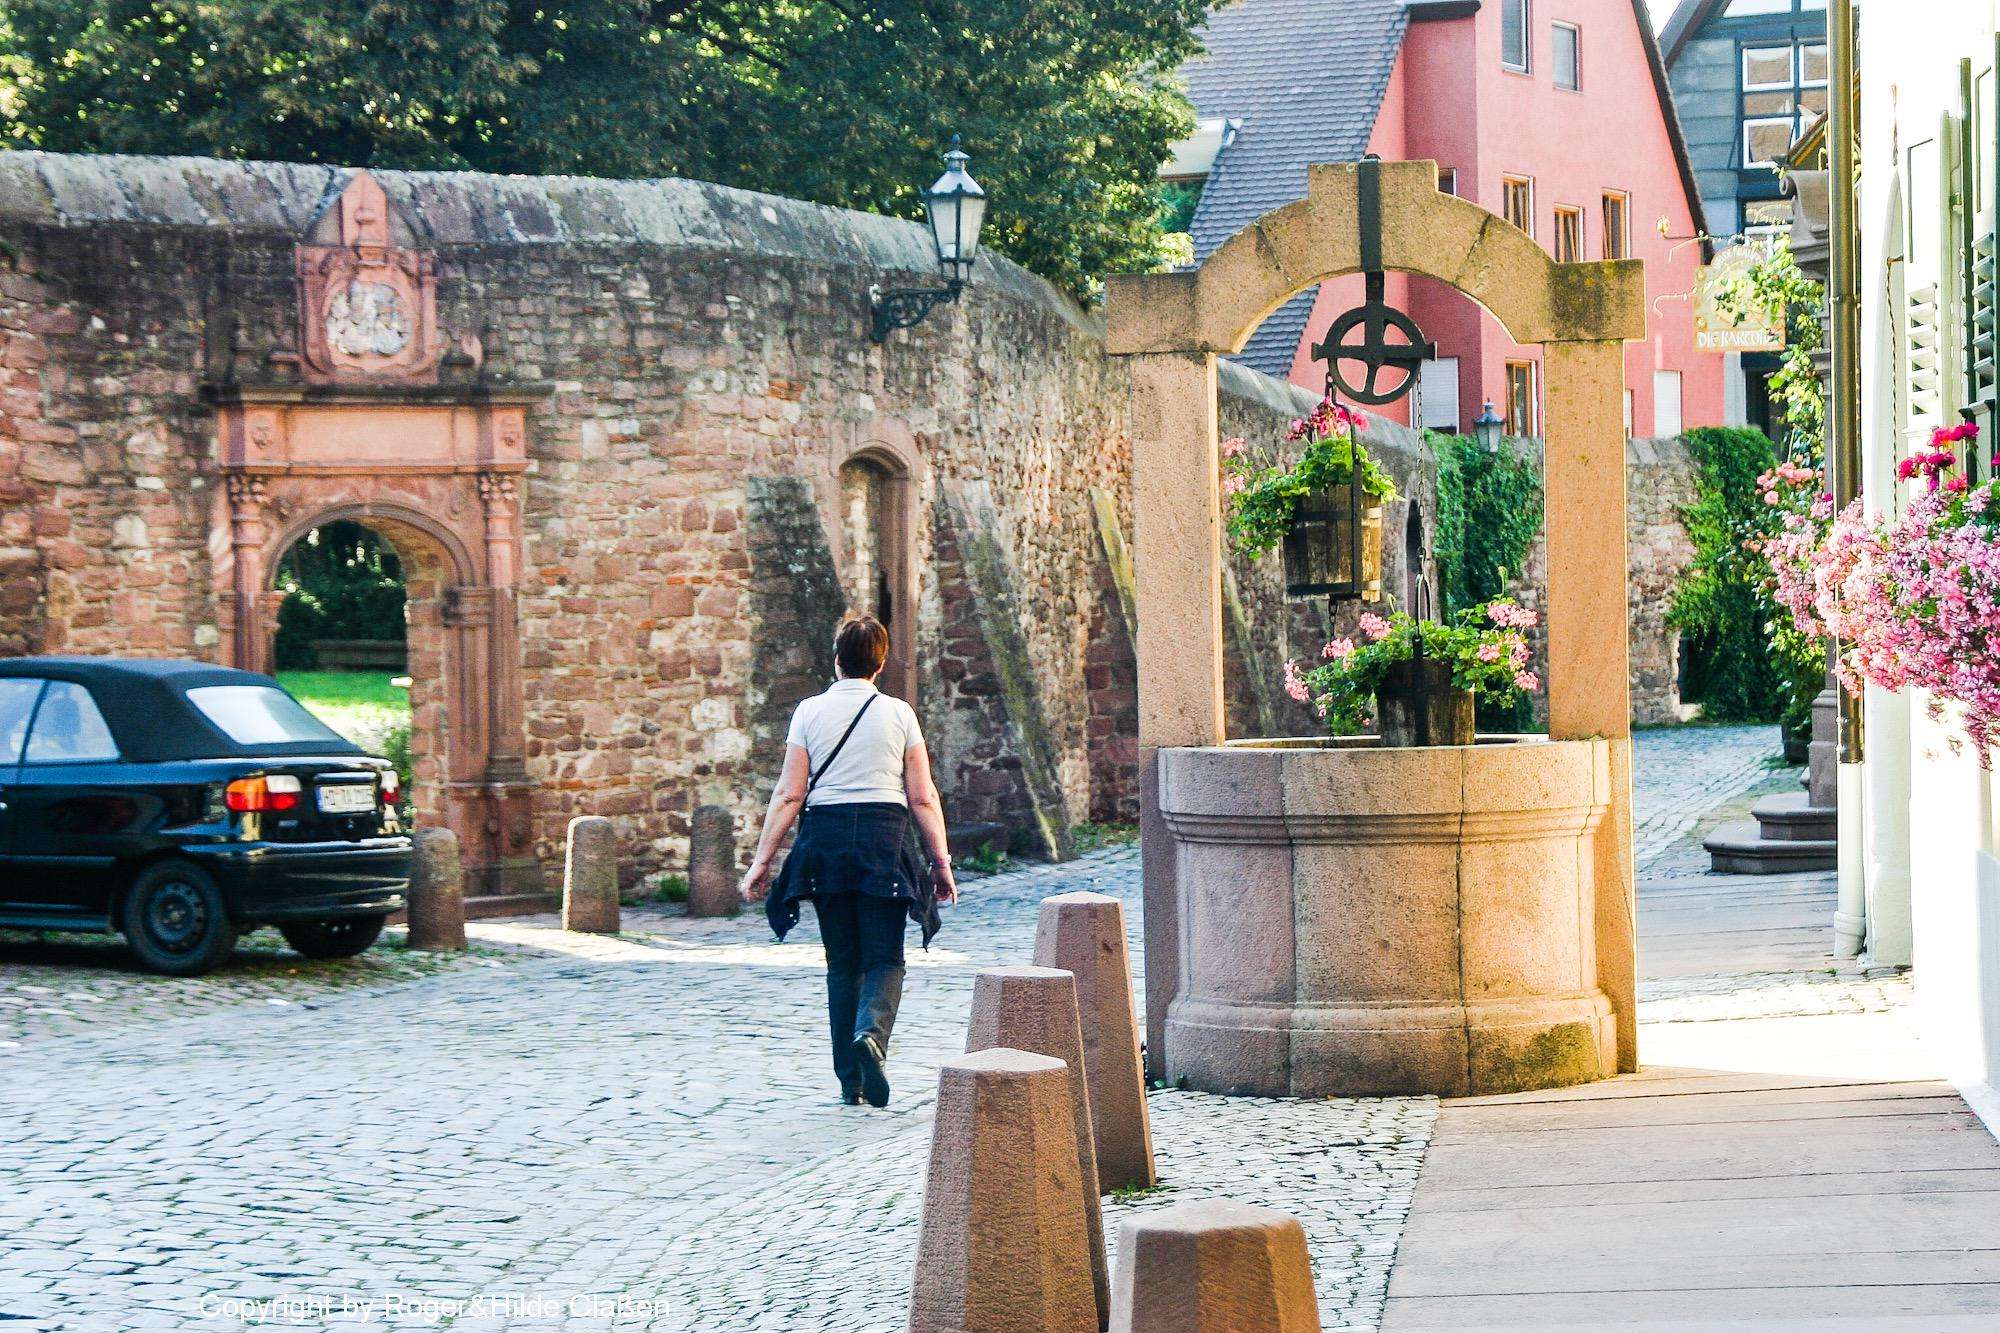 Brunnen in der Altstadt von Ladenburg